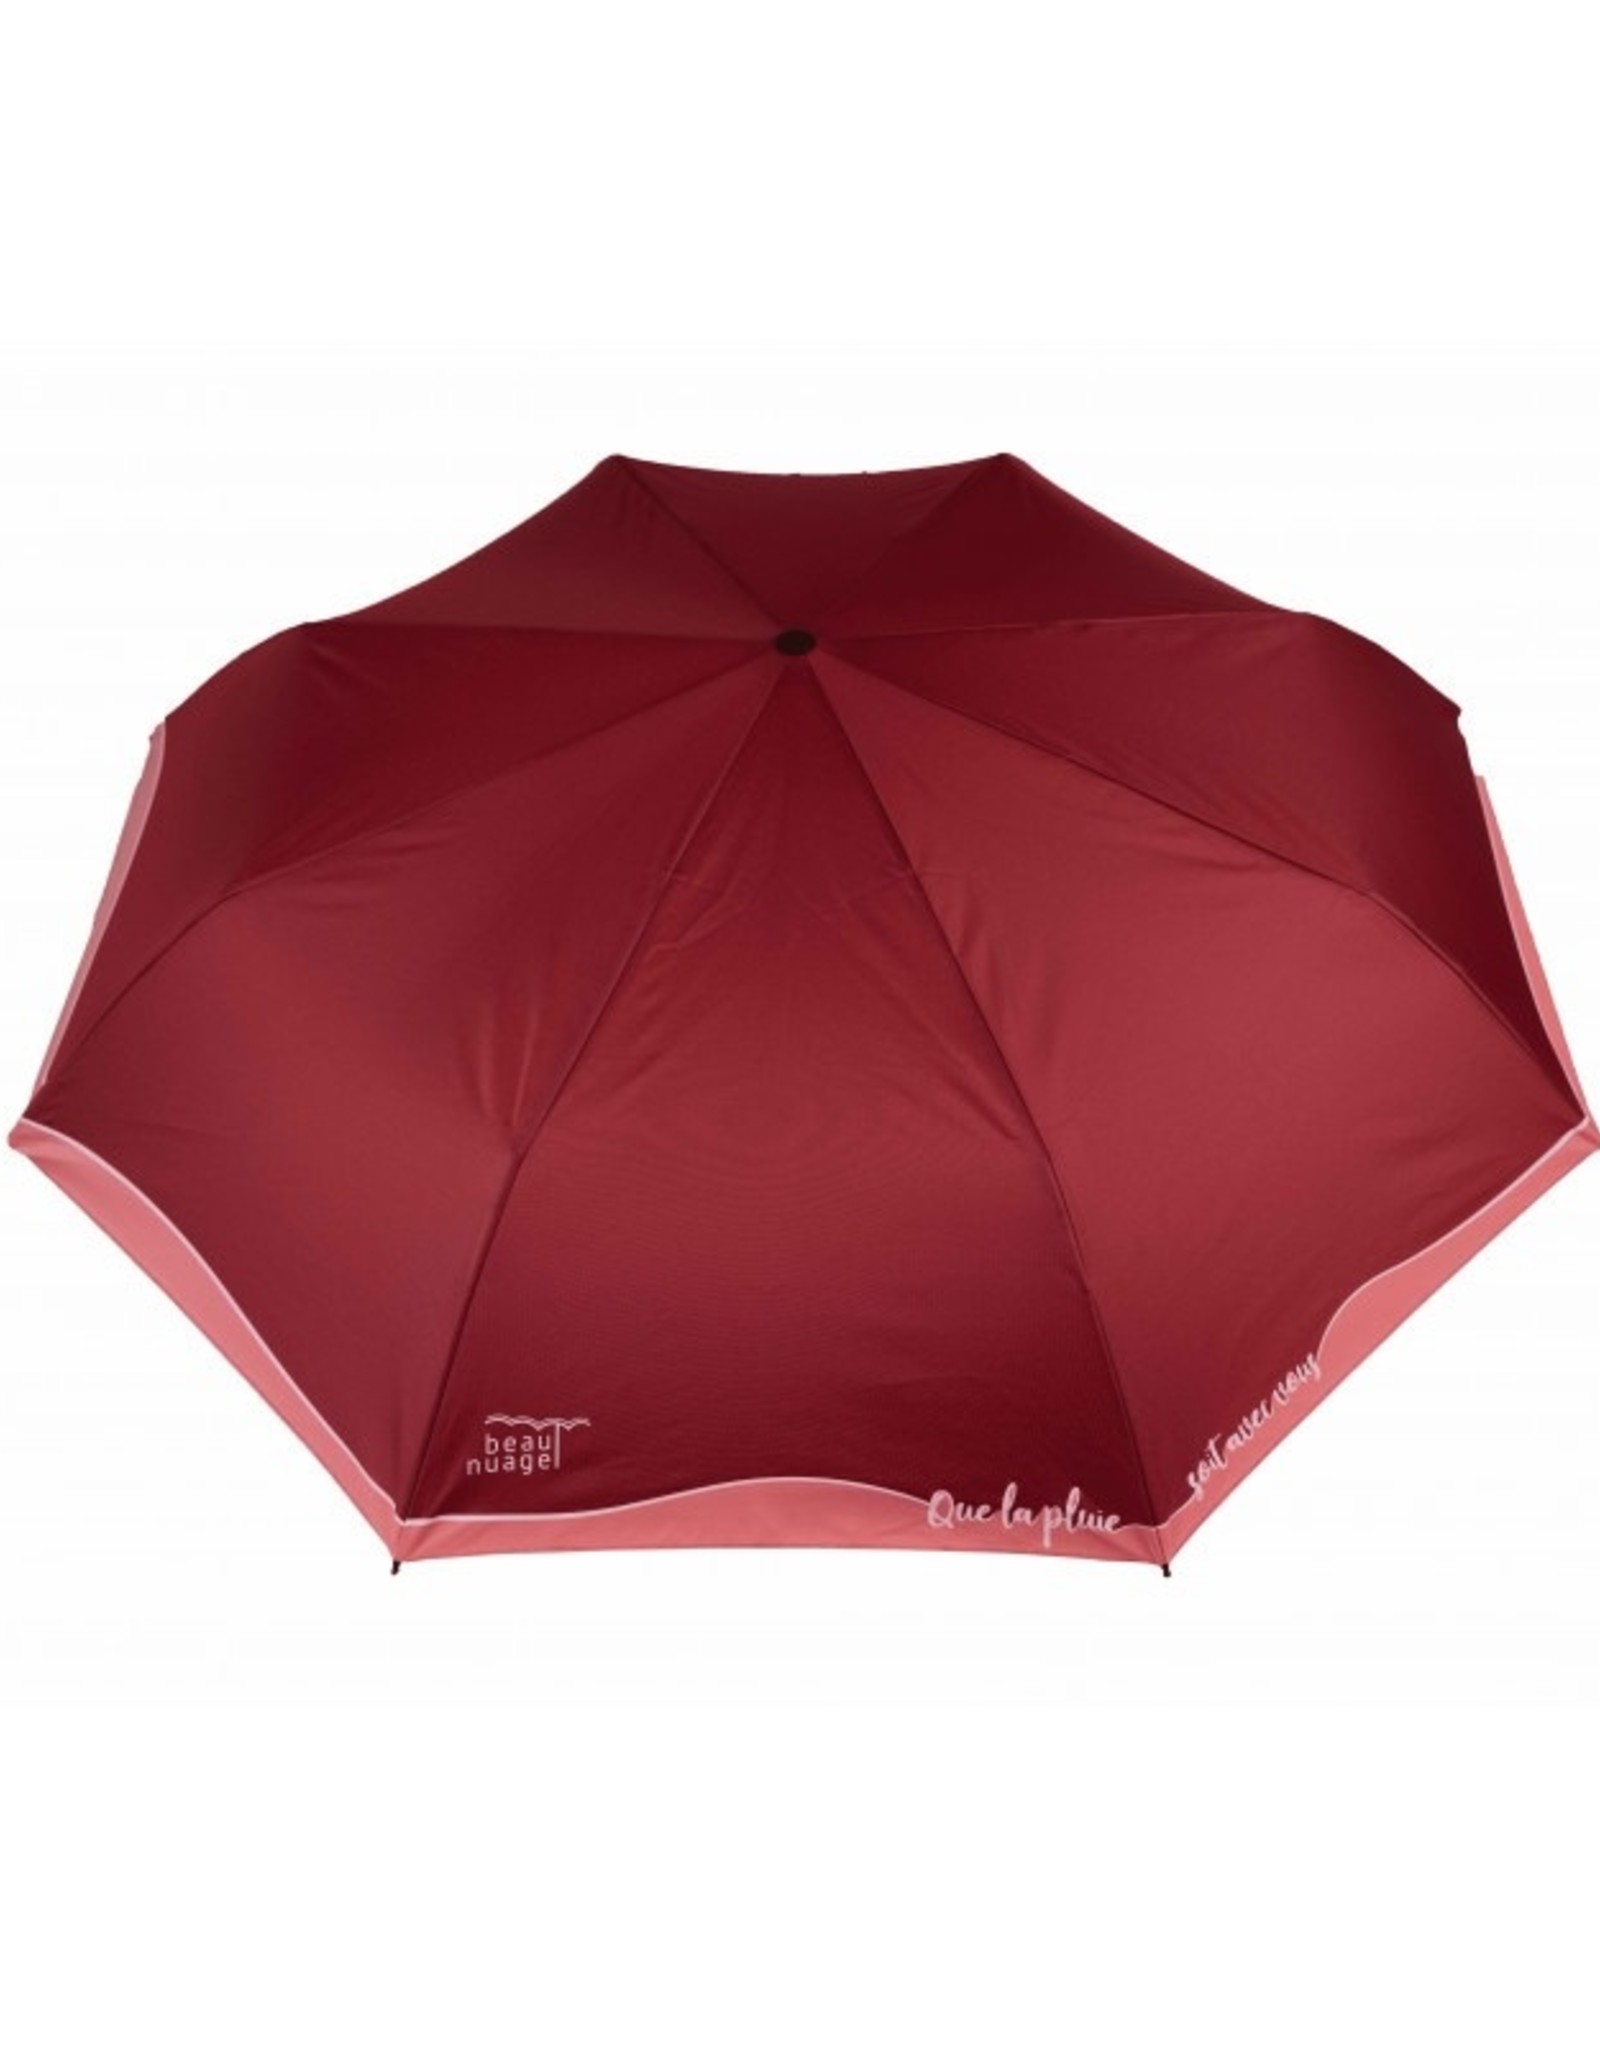 Beau Nuage Le Mini Umbrella